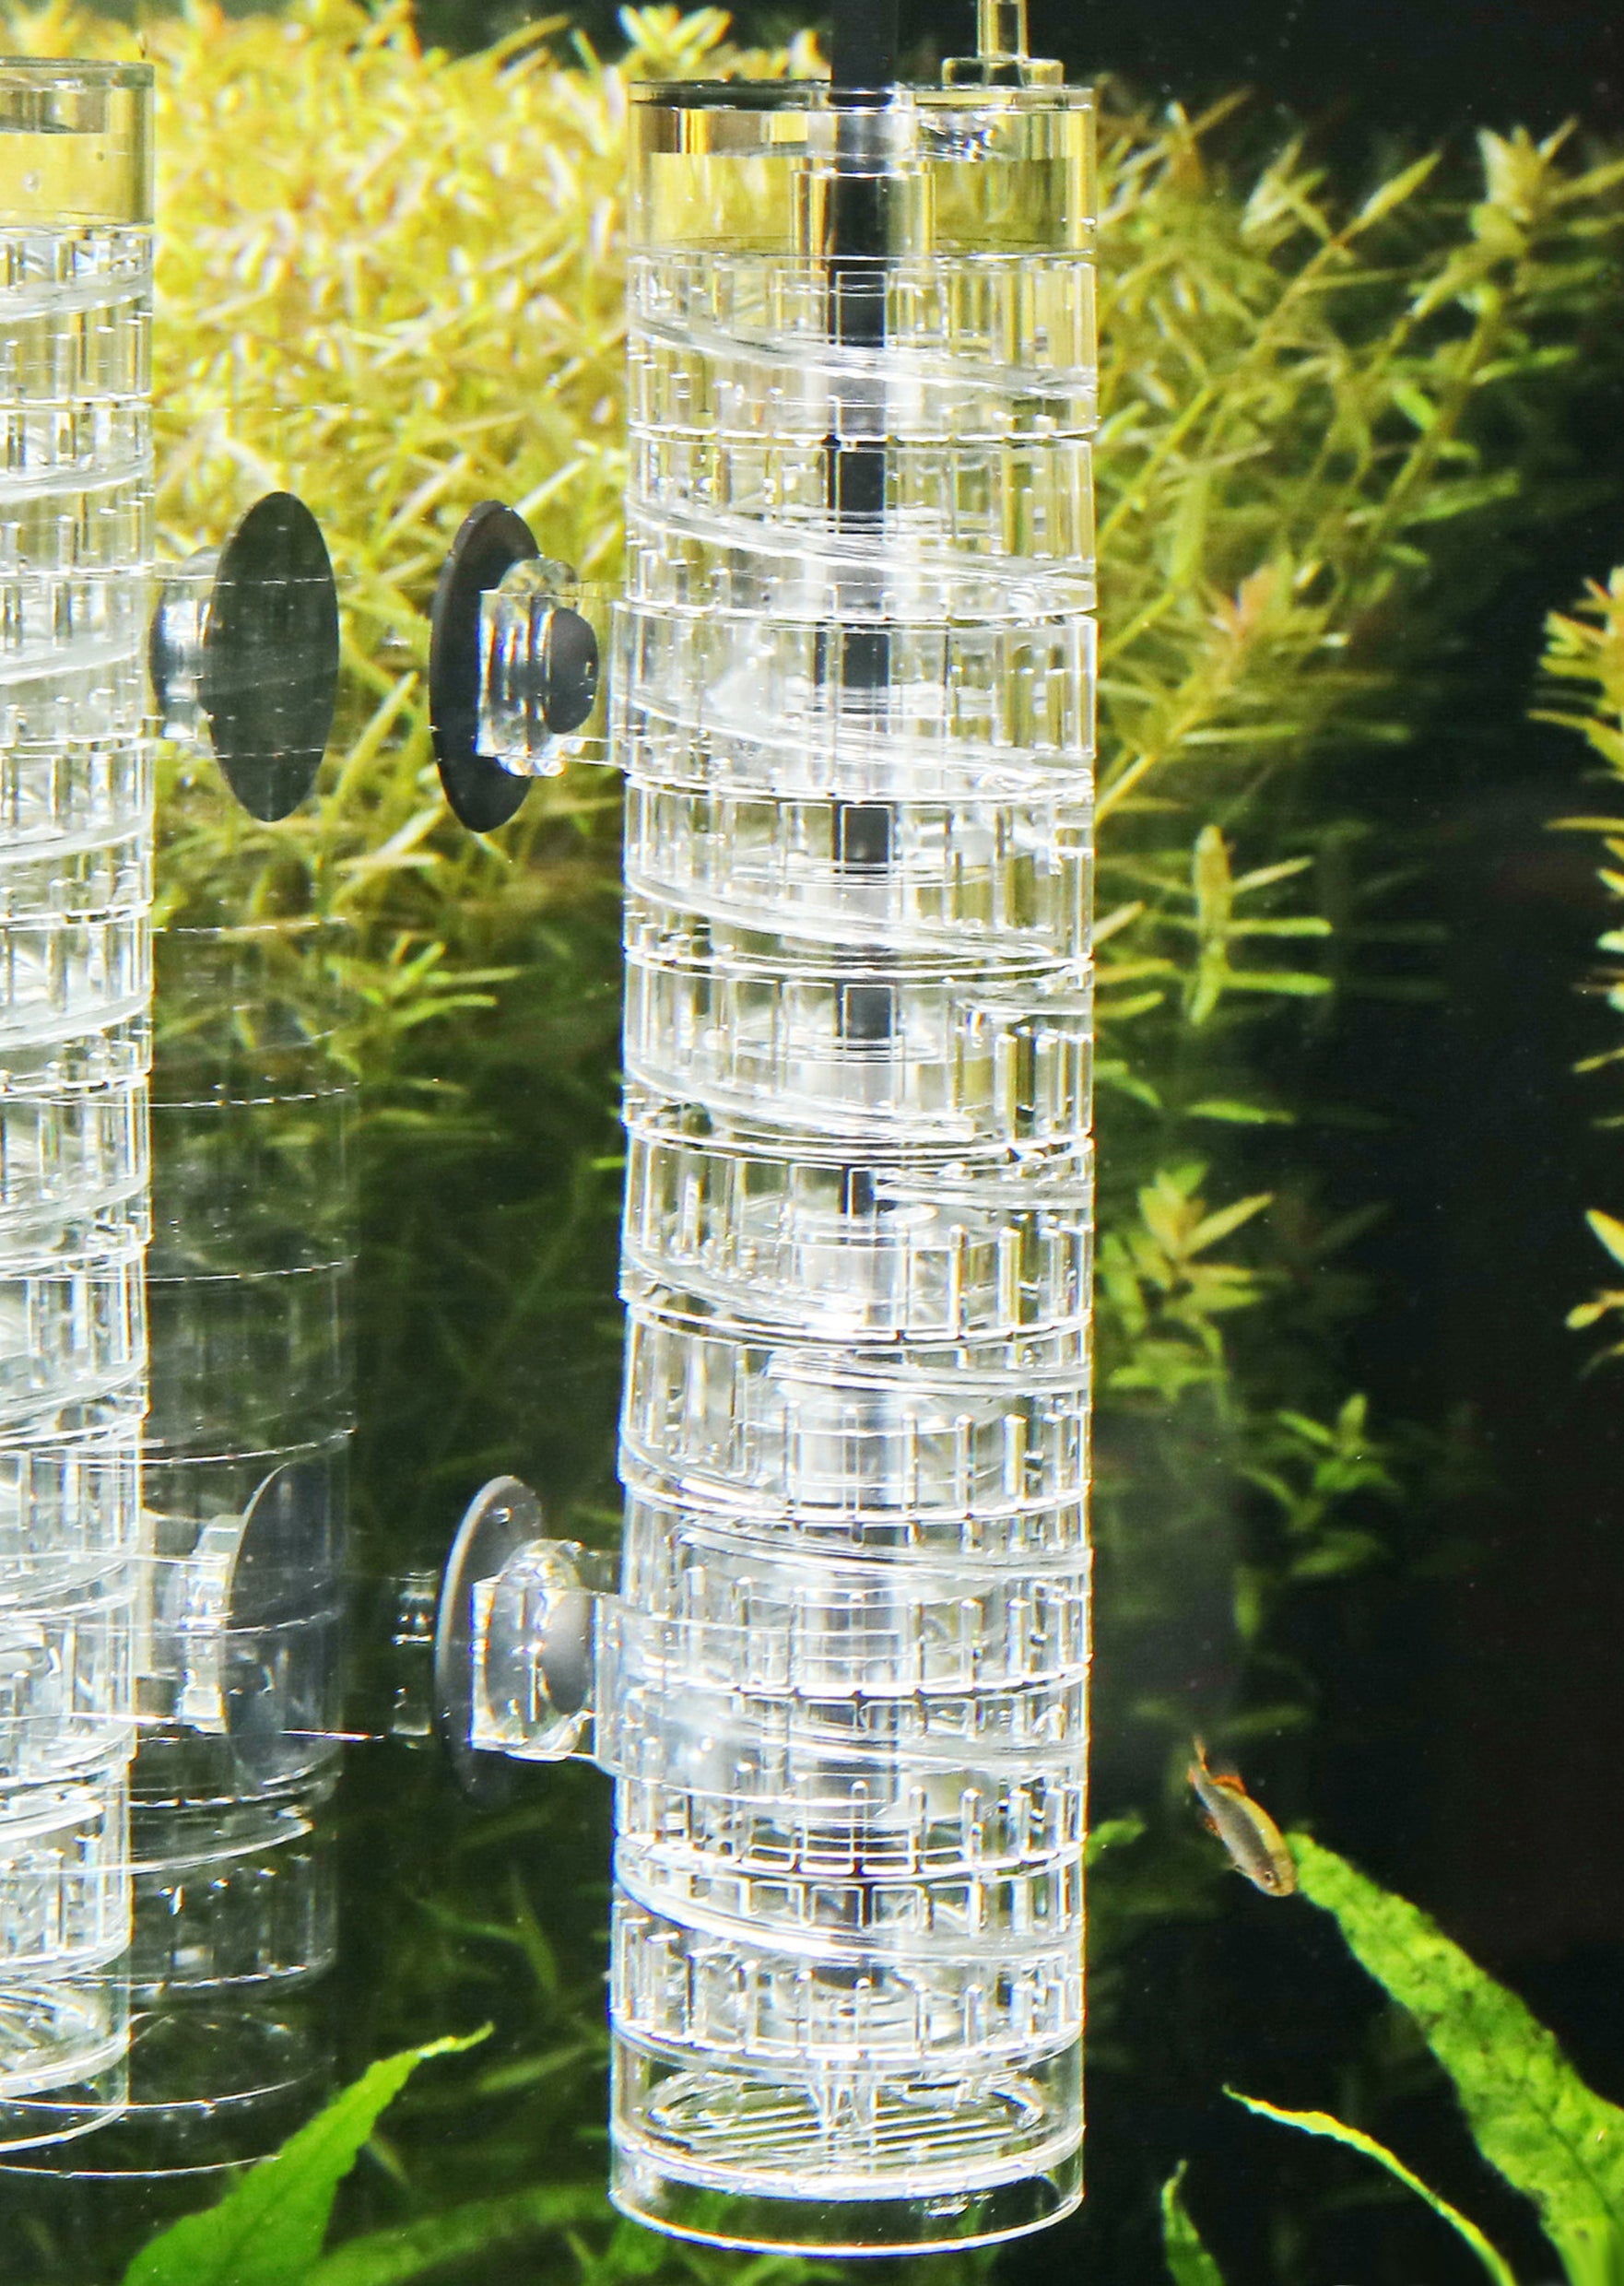 JBL PROFLORA CO2 TAIFUN GLASS MIDI Glas Aquarium CO2 Diffusor Ausströ,  13,20 €